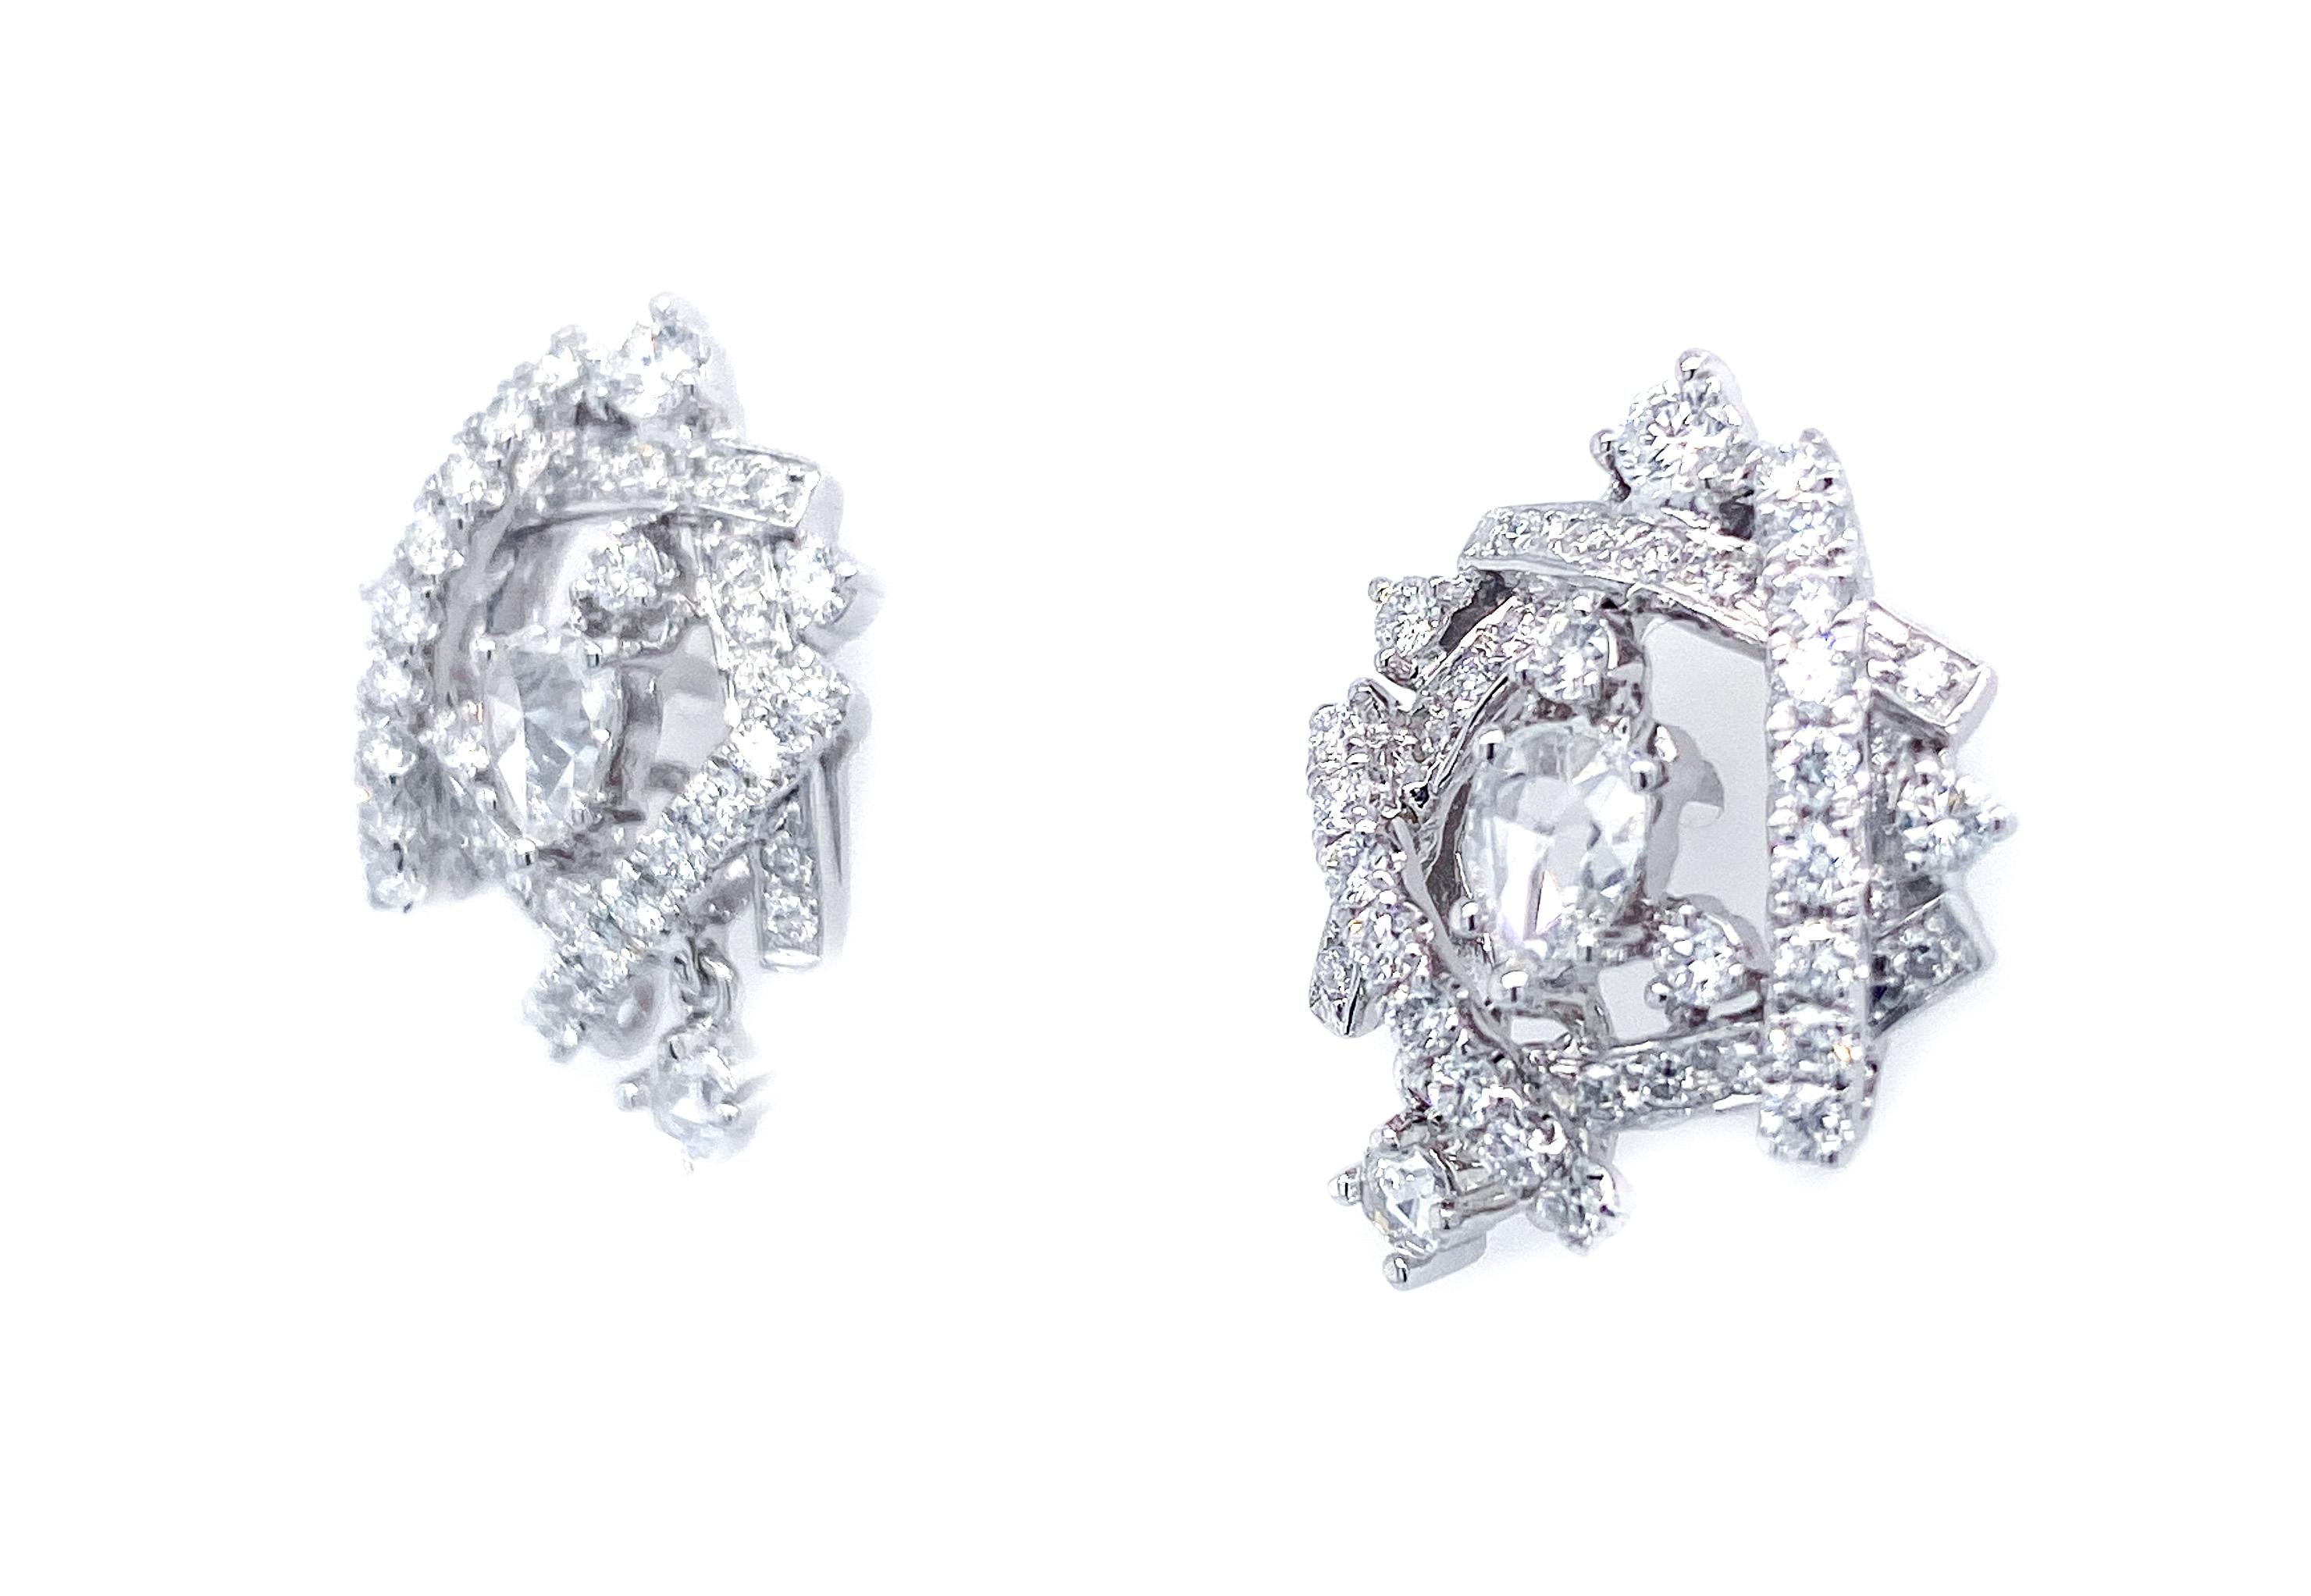 Ein kunstvolles und doch äußerst erfrischendes Design mit 72 ineinander verschlungenen runden Diamanten von insgesamt 0,83 Karat und 4 klaren und sauberen Diamanten im Altschliff von insgesamt 0,41 Karat. Diese wunderschön zu tragenden Ohrringe